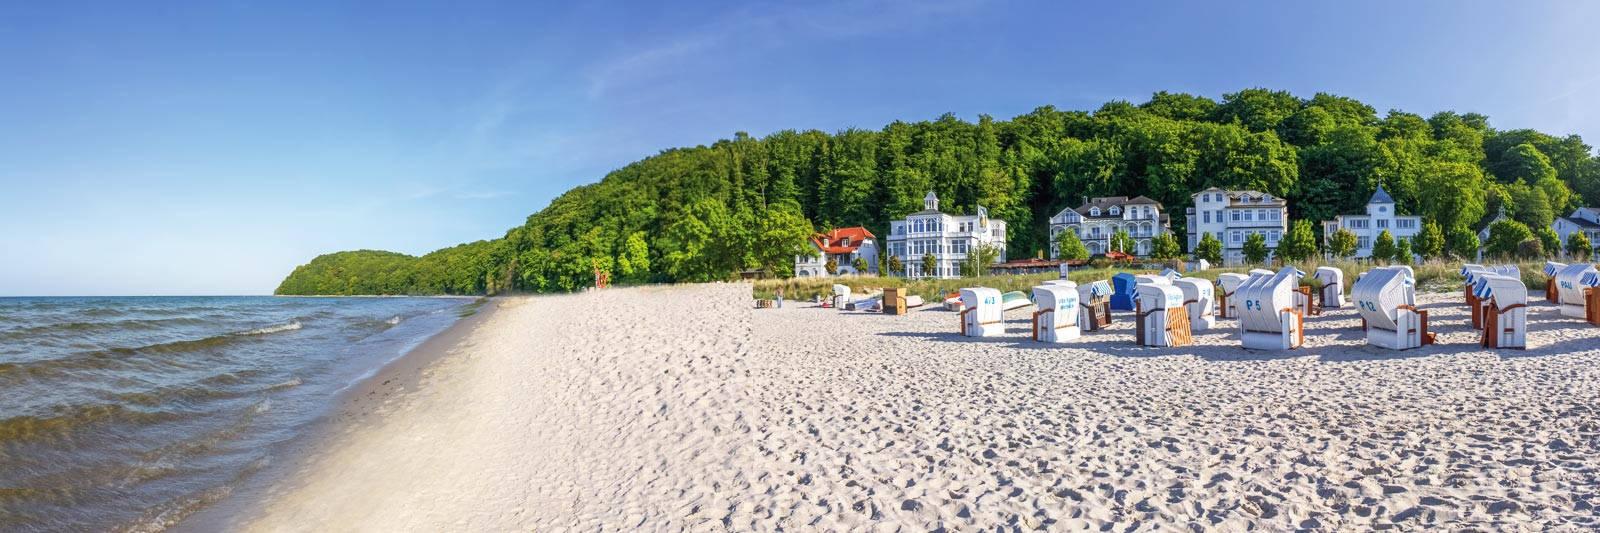 41.123 Ferienwohnungen und Ferienhäuser in Mecklenburg-Vorpommern - tourist-online.de